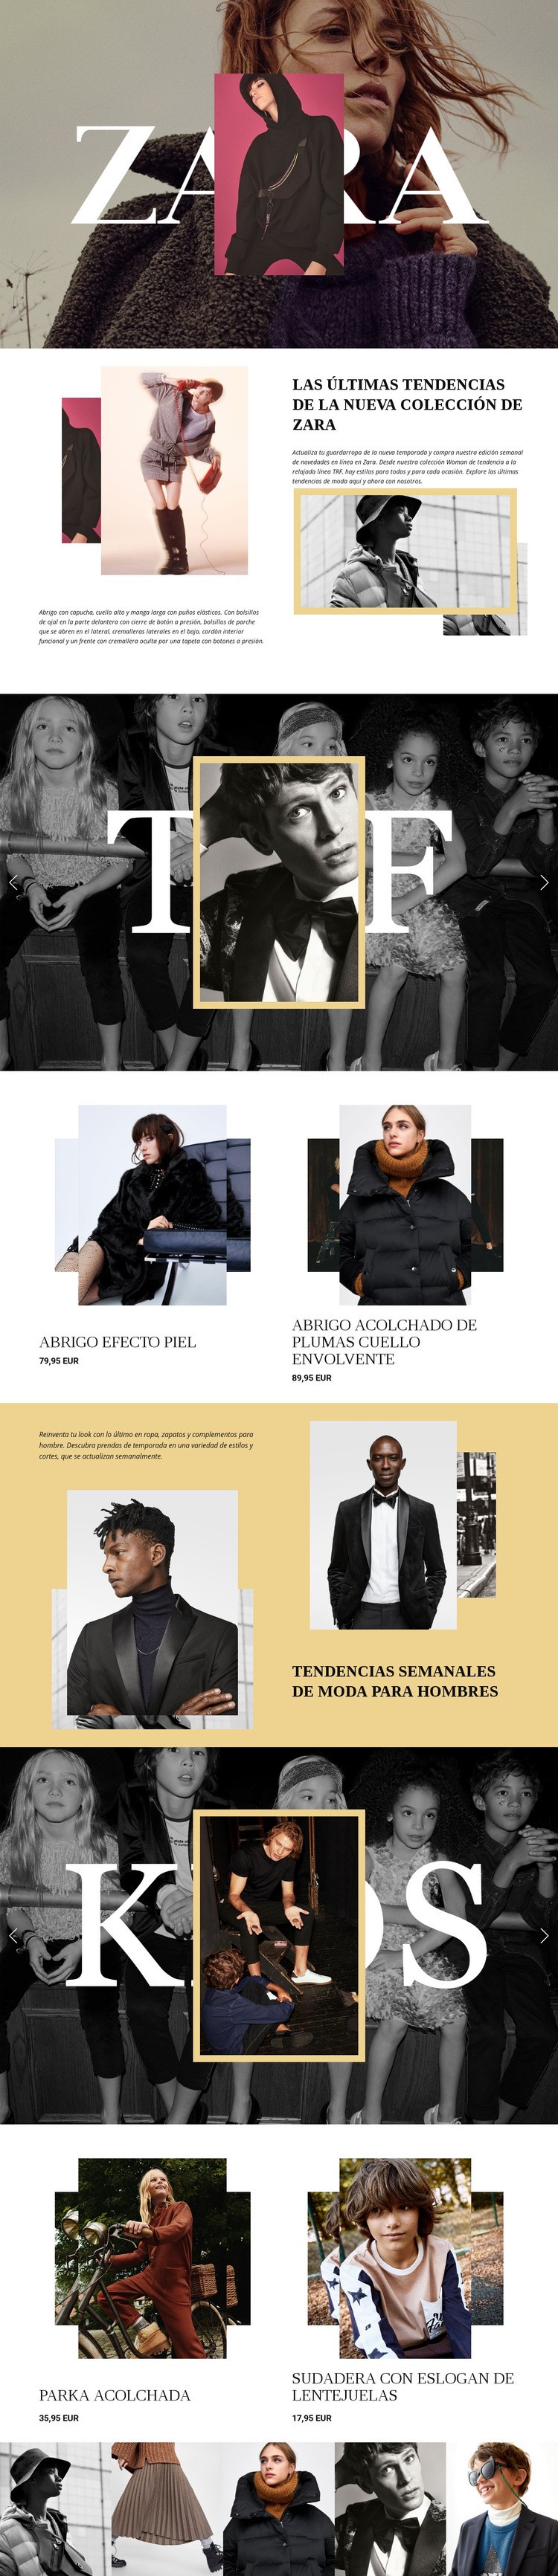 Zara Diseño de páginas web